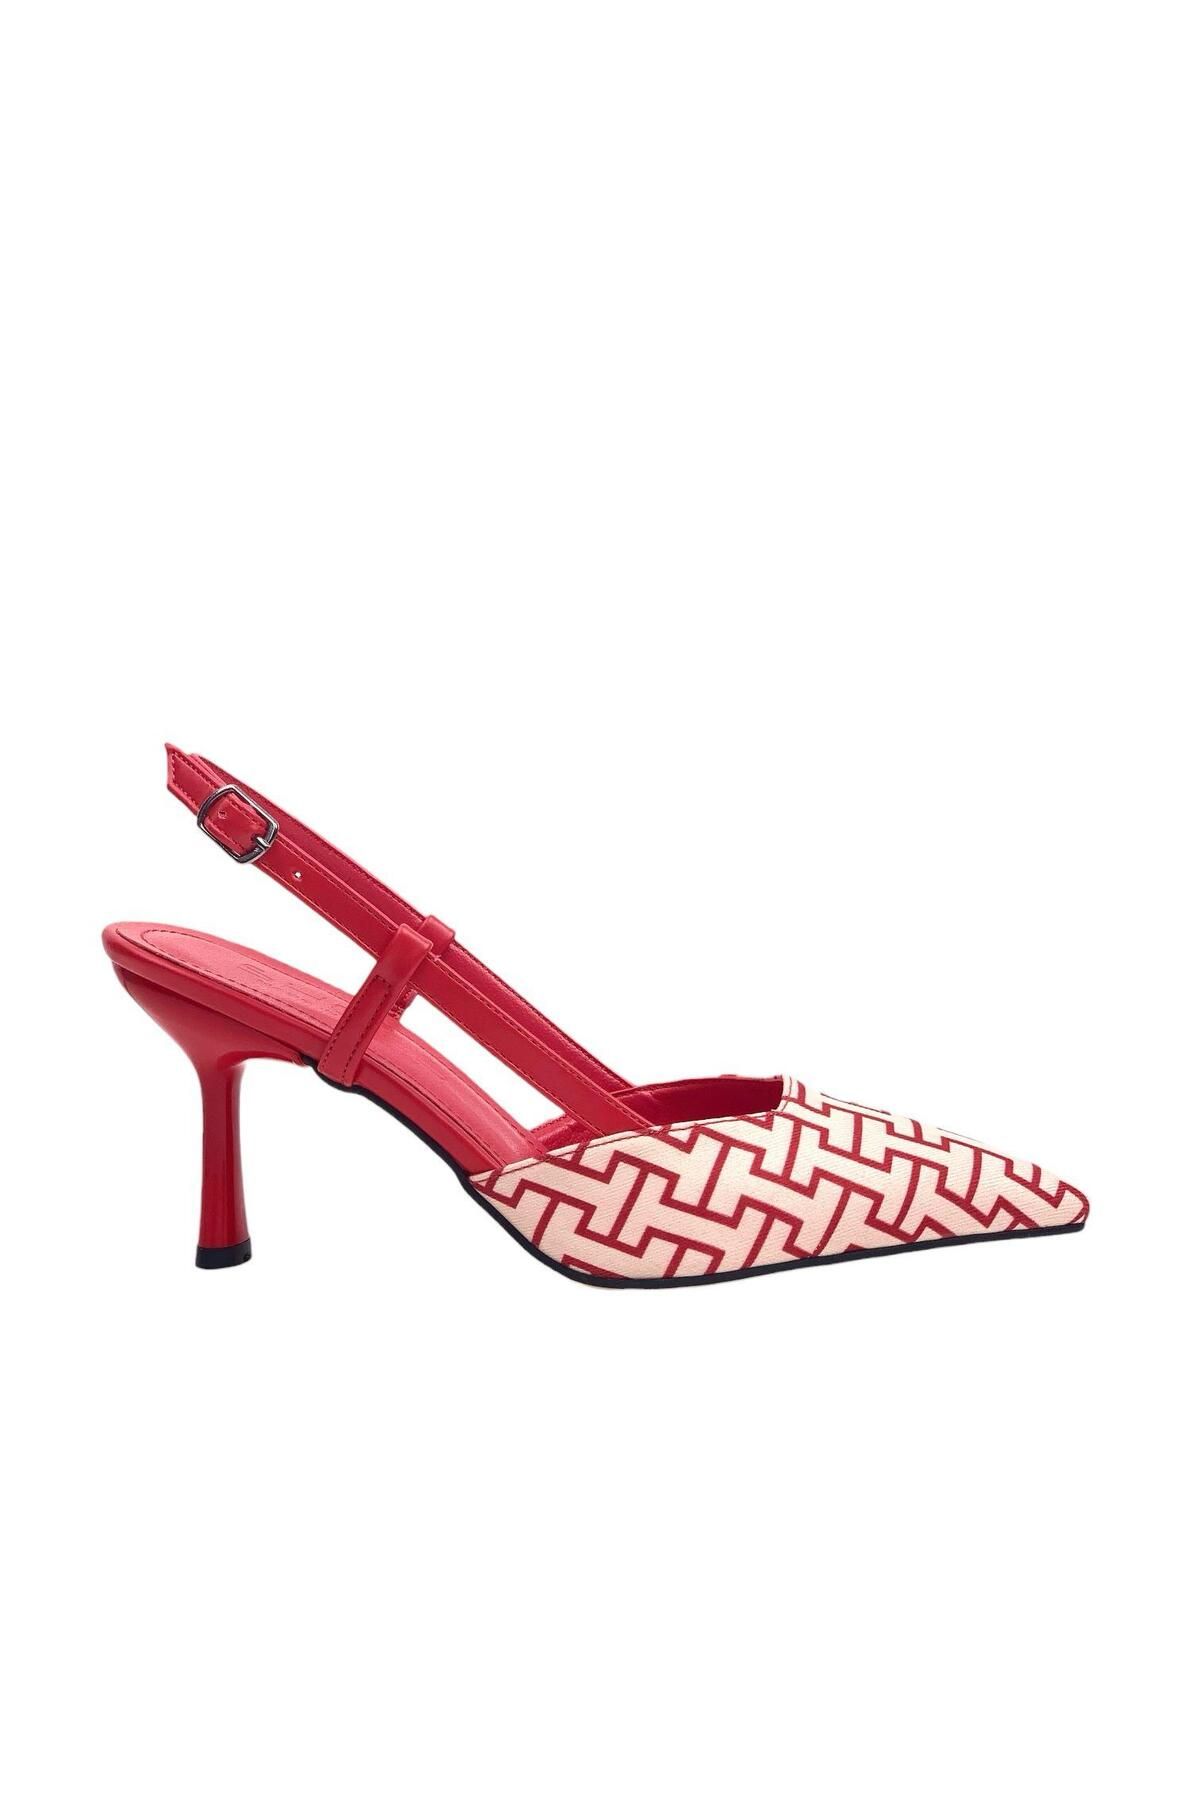 bescobel Kadın Yurban Kırmızı İnce Topuk Tekstil Sandalet 8 cm 2101